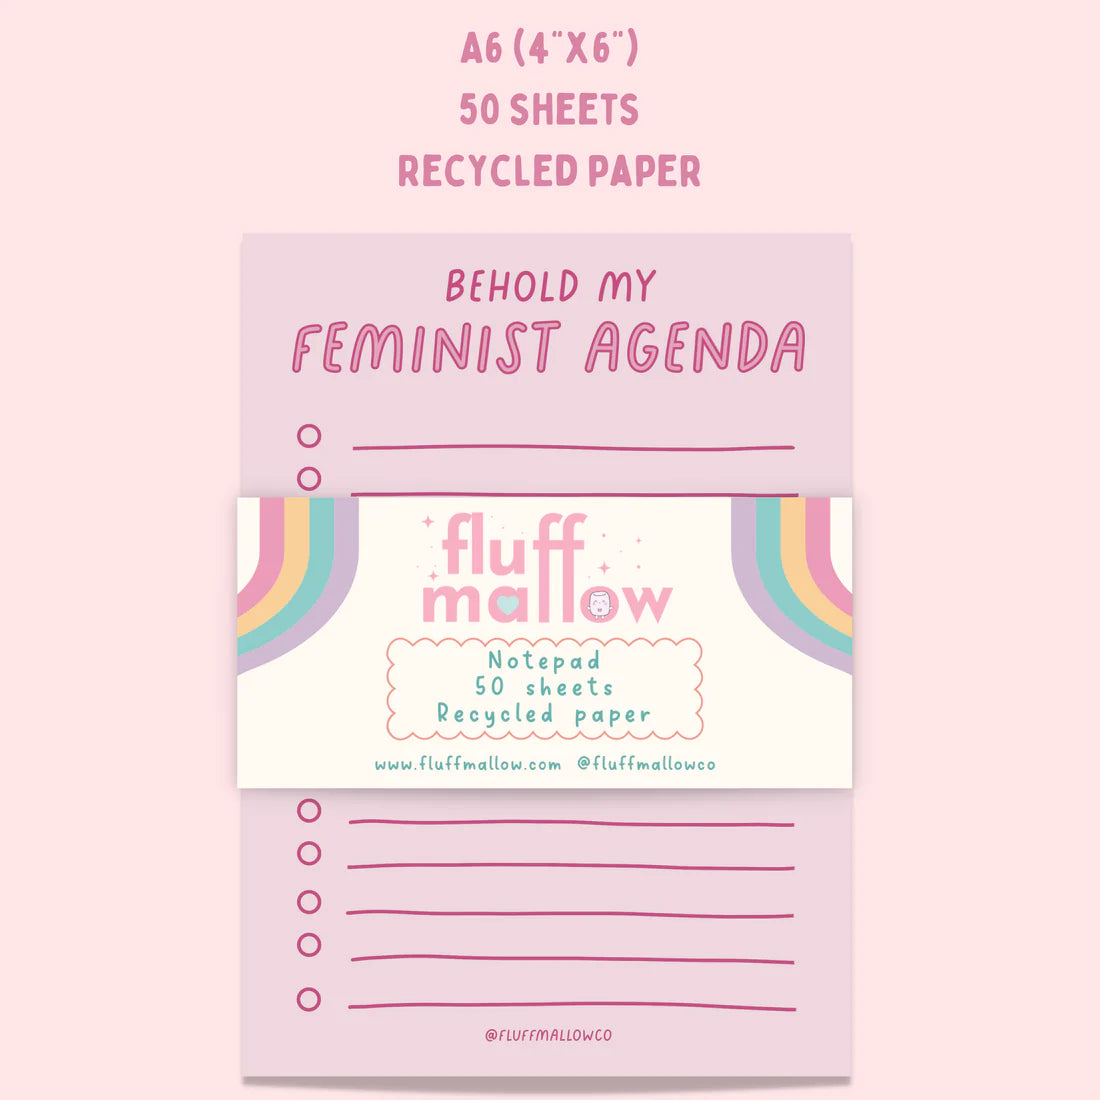 Feminist Agenda Checklist NOTEPAD